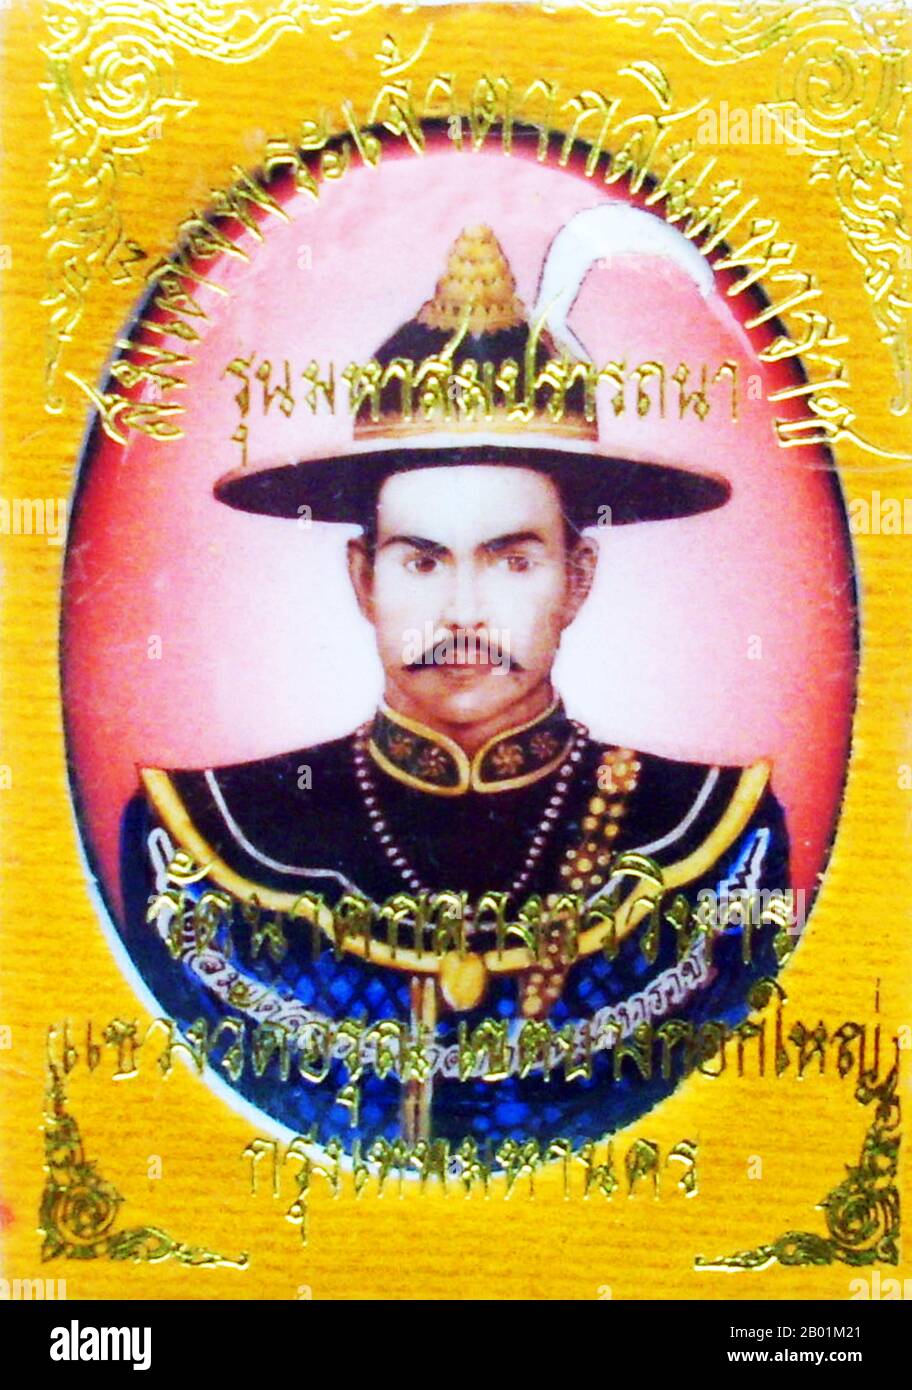 Thailandia: Re Taksin il grande (17 aprile 1734 - 7 aprile 1782), re del Siam (r. 1768-1782), rappresentato su un amuleto in vendita a Sanam Luang, Bangkok, nel 2010. Taksin (Somdet Phra Chao Taksin Maharat) fu l'unico re del regno di Thonburi. È molto venerato dal popolo thailandese per la sua leadership nel liberare il Siam dall'occupazione birmana dopo la seconda caduta di Ayutthaya nel 1767, e la successiva unificazione del Siam dopo che questo cadde sotto vari signori della guerra. Stabilì la città di Thonburi come nuova capitale, poiché la città di Ayutthaya era stata quasi completamente distrutta dagli invasori. Foto Stock